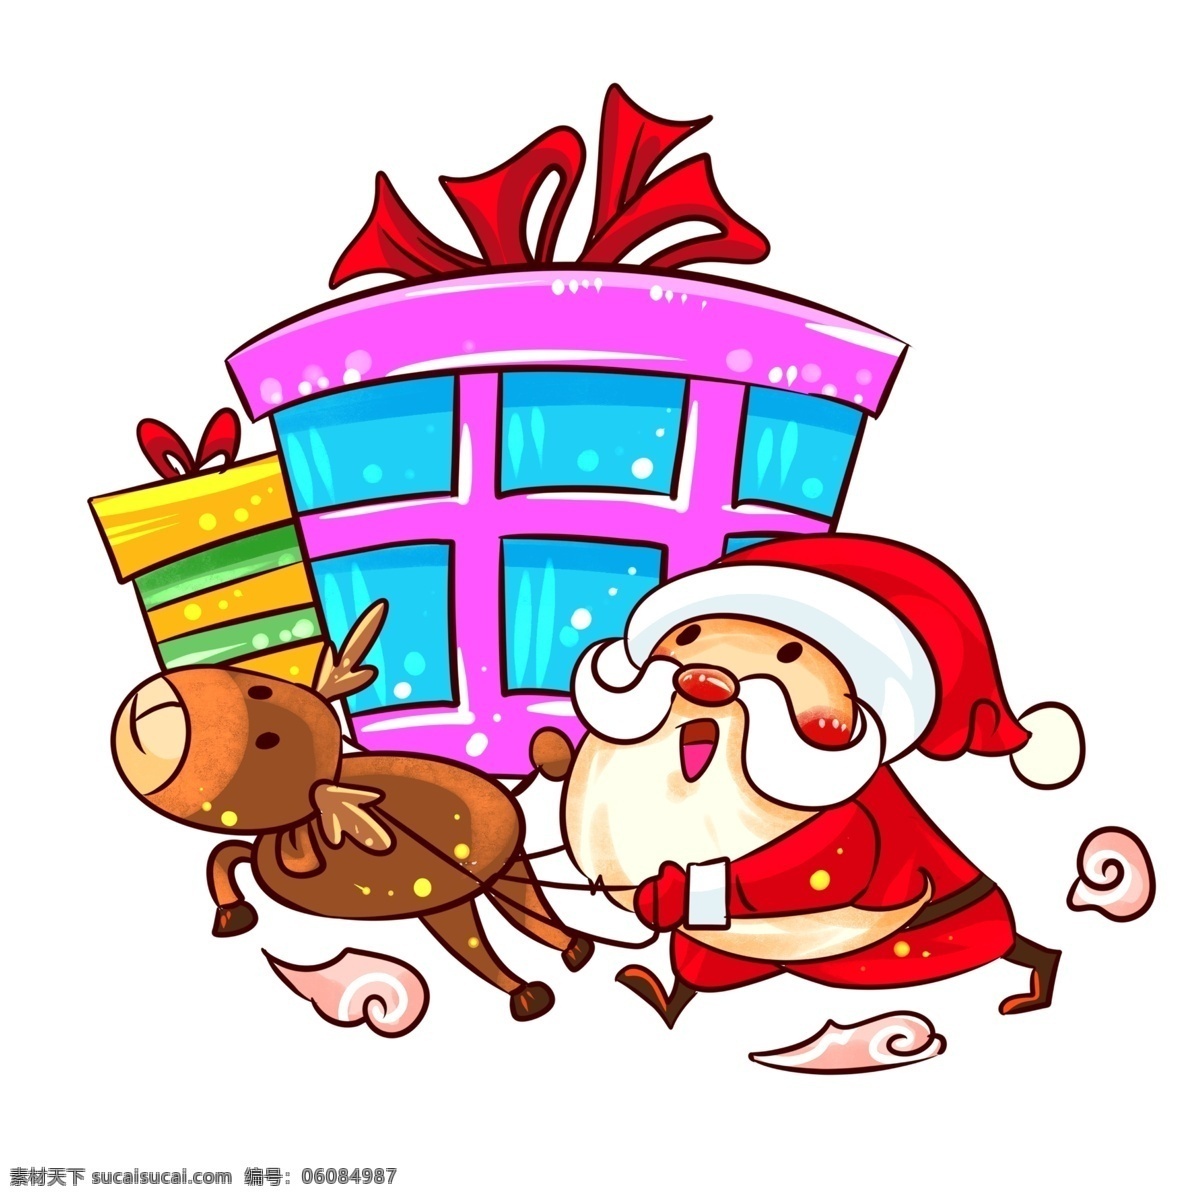 圣诞节 圣诞老人 麋鹿 手绘 插画 手绘送礼物 礼物 圣诞节雪人 雪人 收礼 物 小朋友